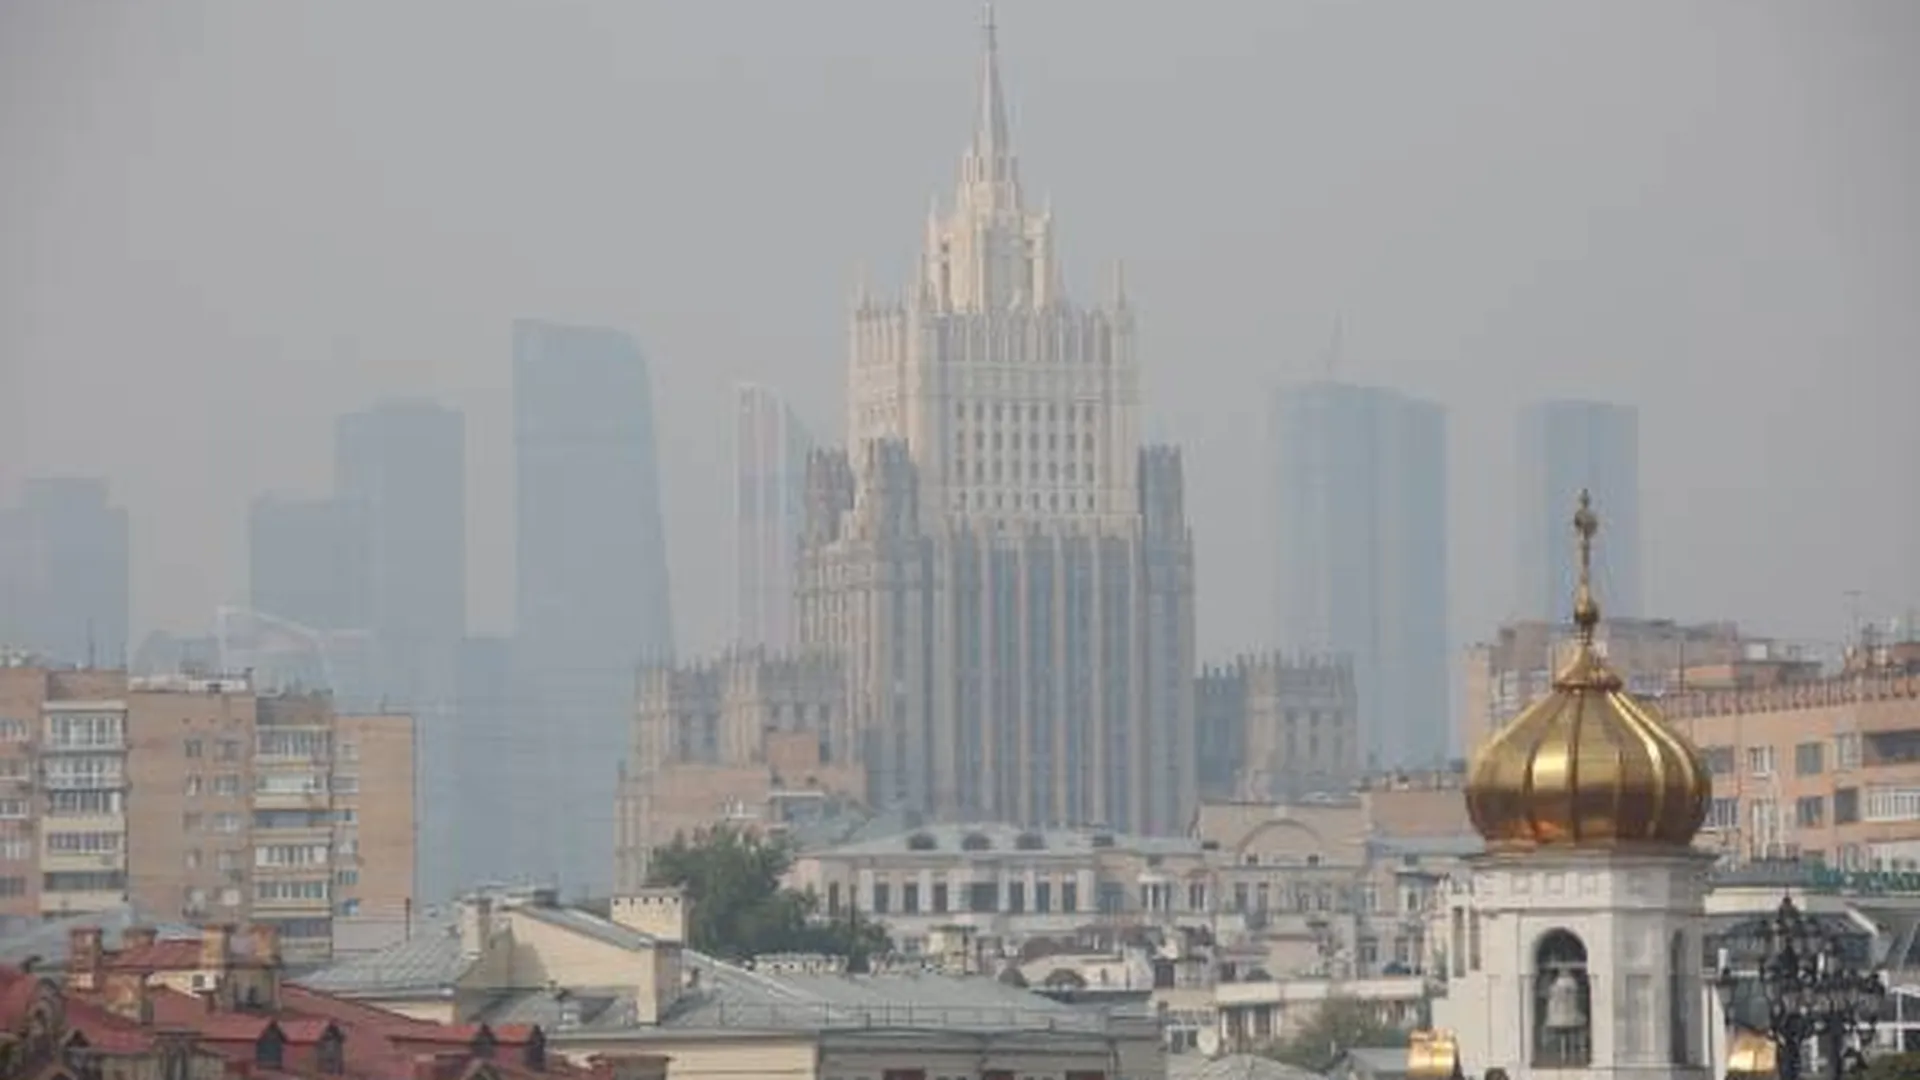 Европа тоже столкнулась с лесными пожарами. Защититься от дыма и смога помогут маски